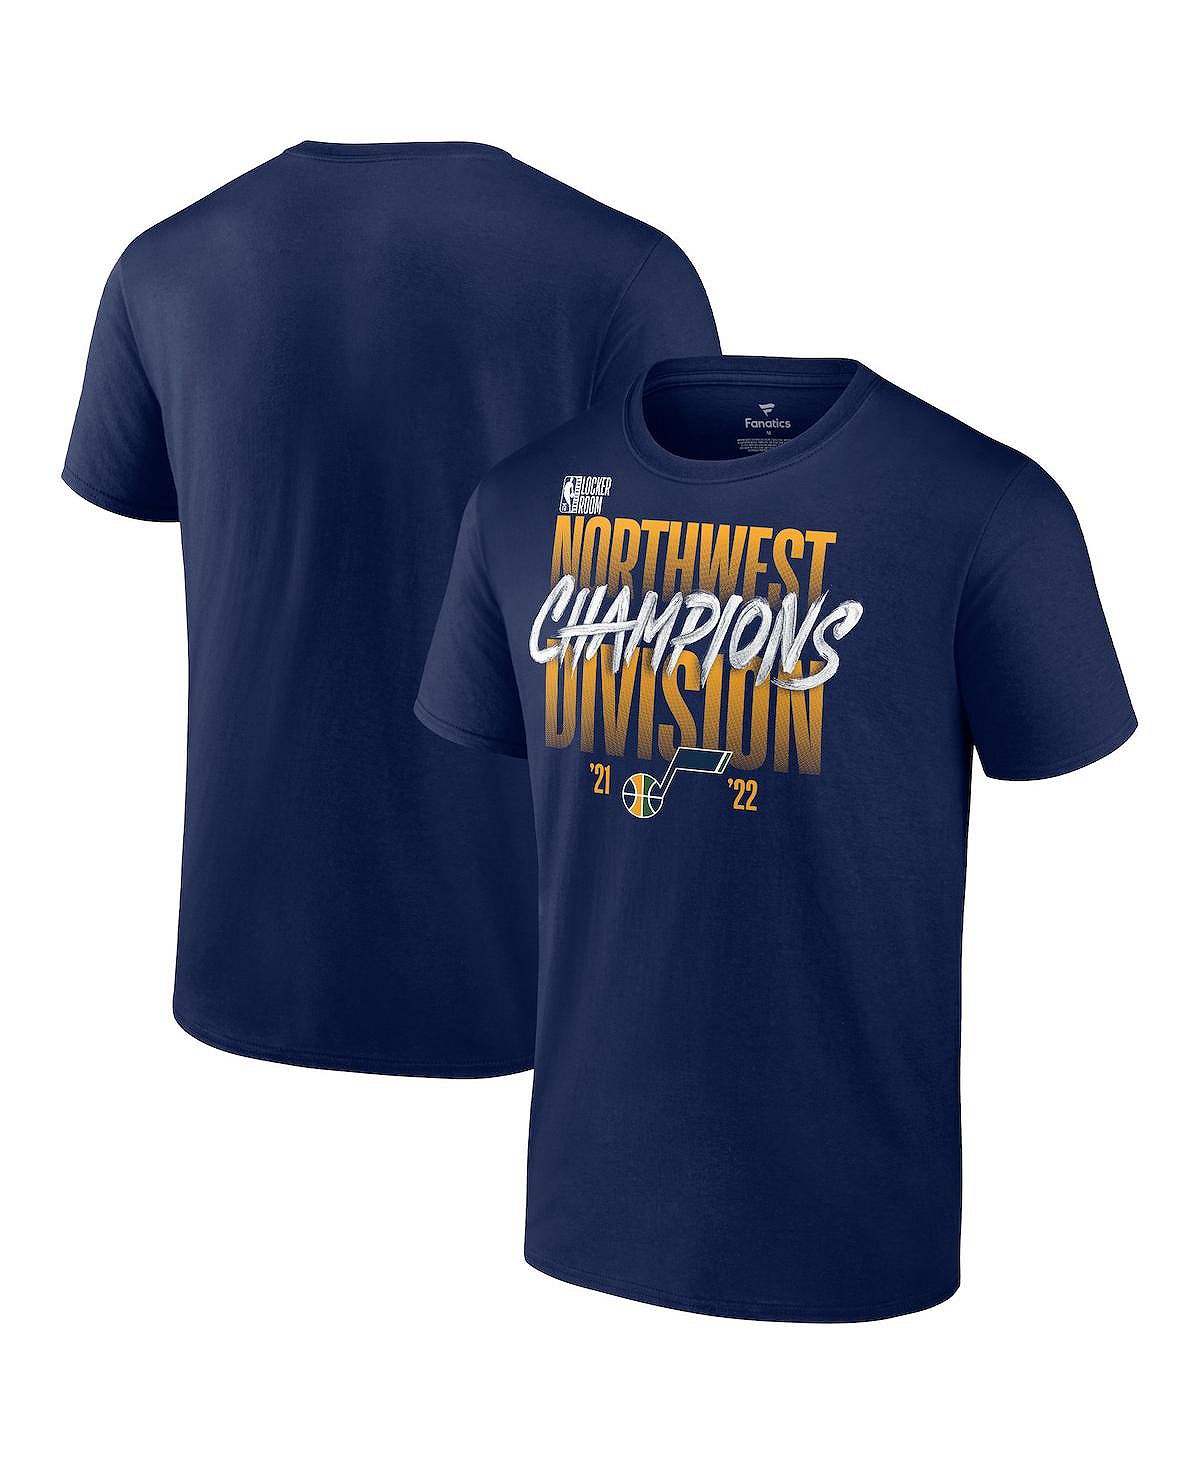 Мужская фирменная темно-синяя футболка utah jazz 2022 northwest division champions в раздевалке Fanatics, синий